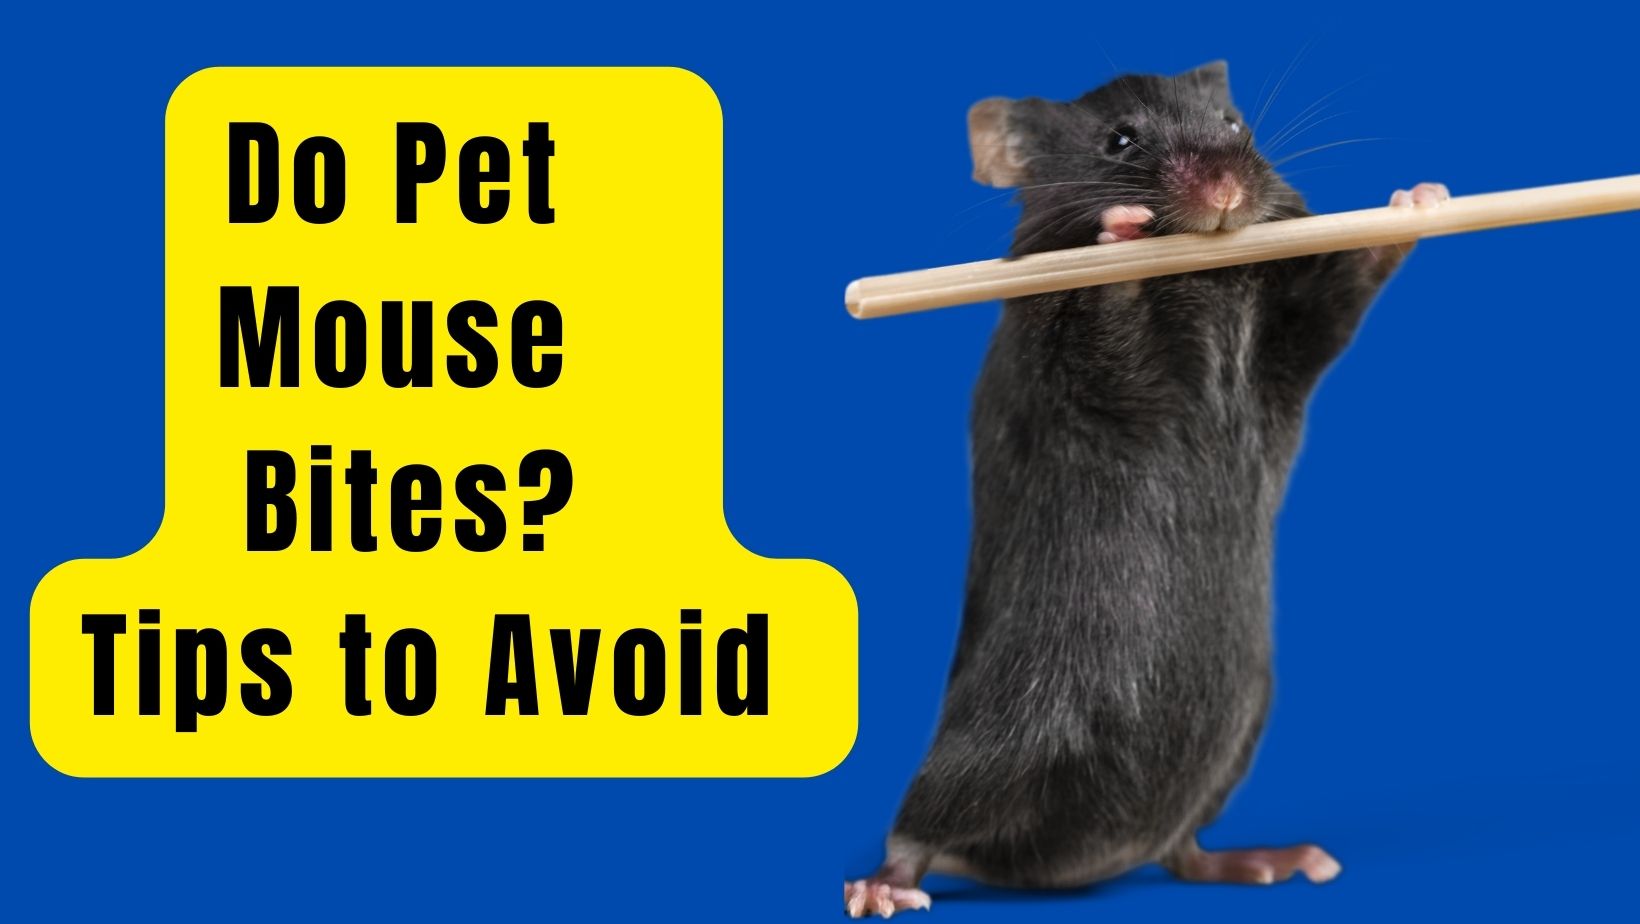 Do Pet Mouse Bites